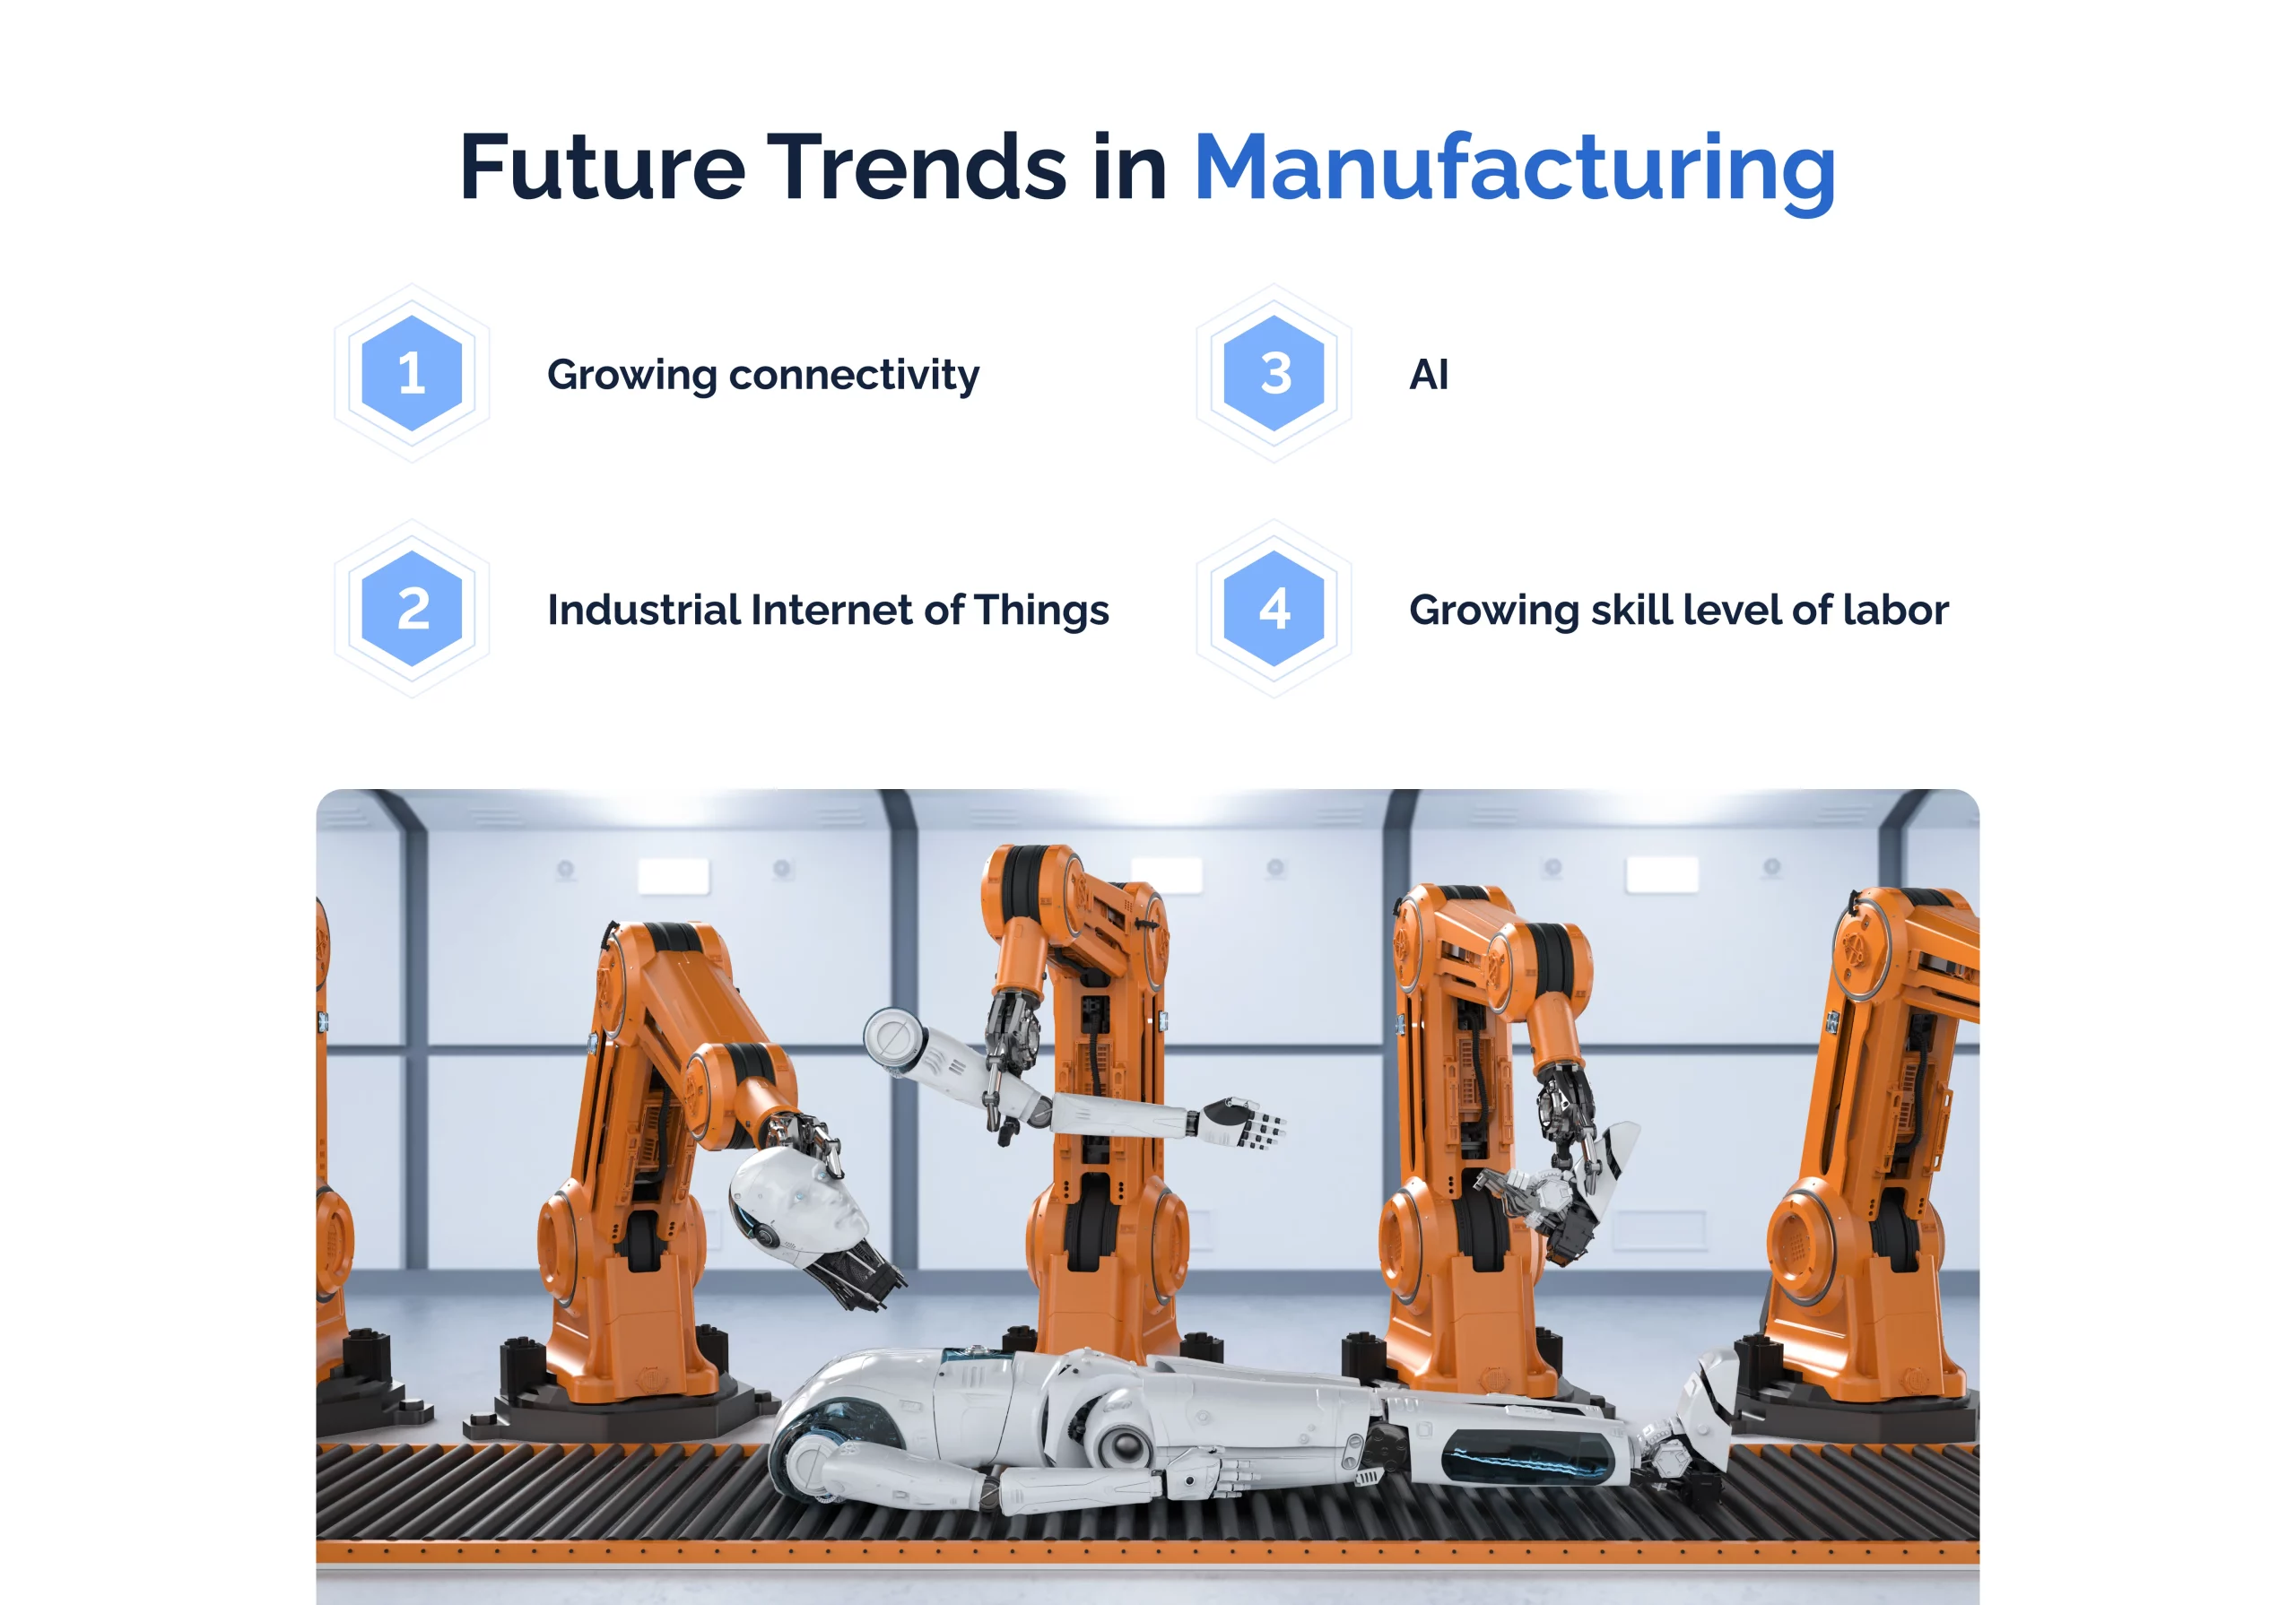 Future trends in manufacturing